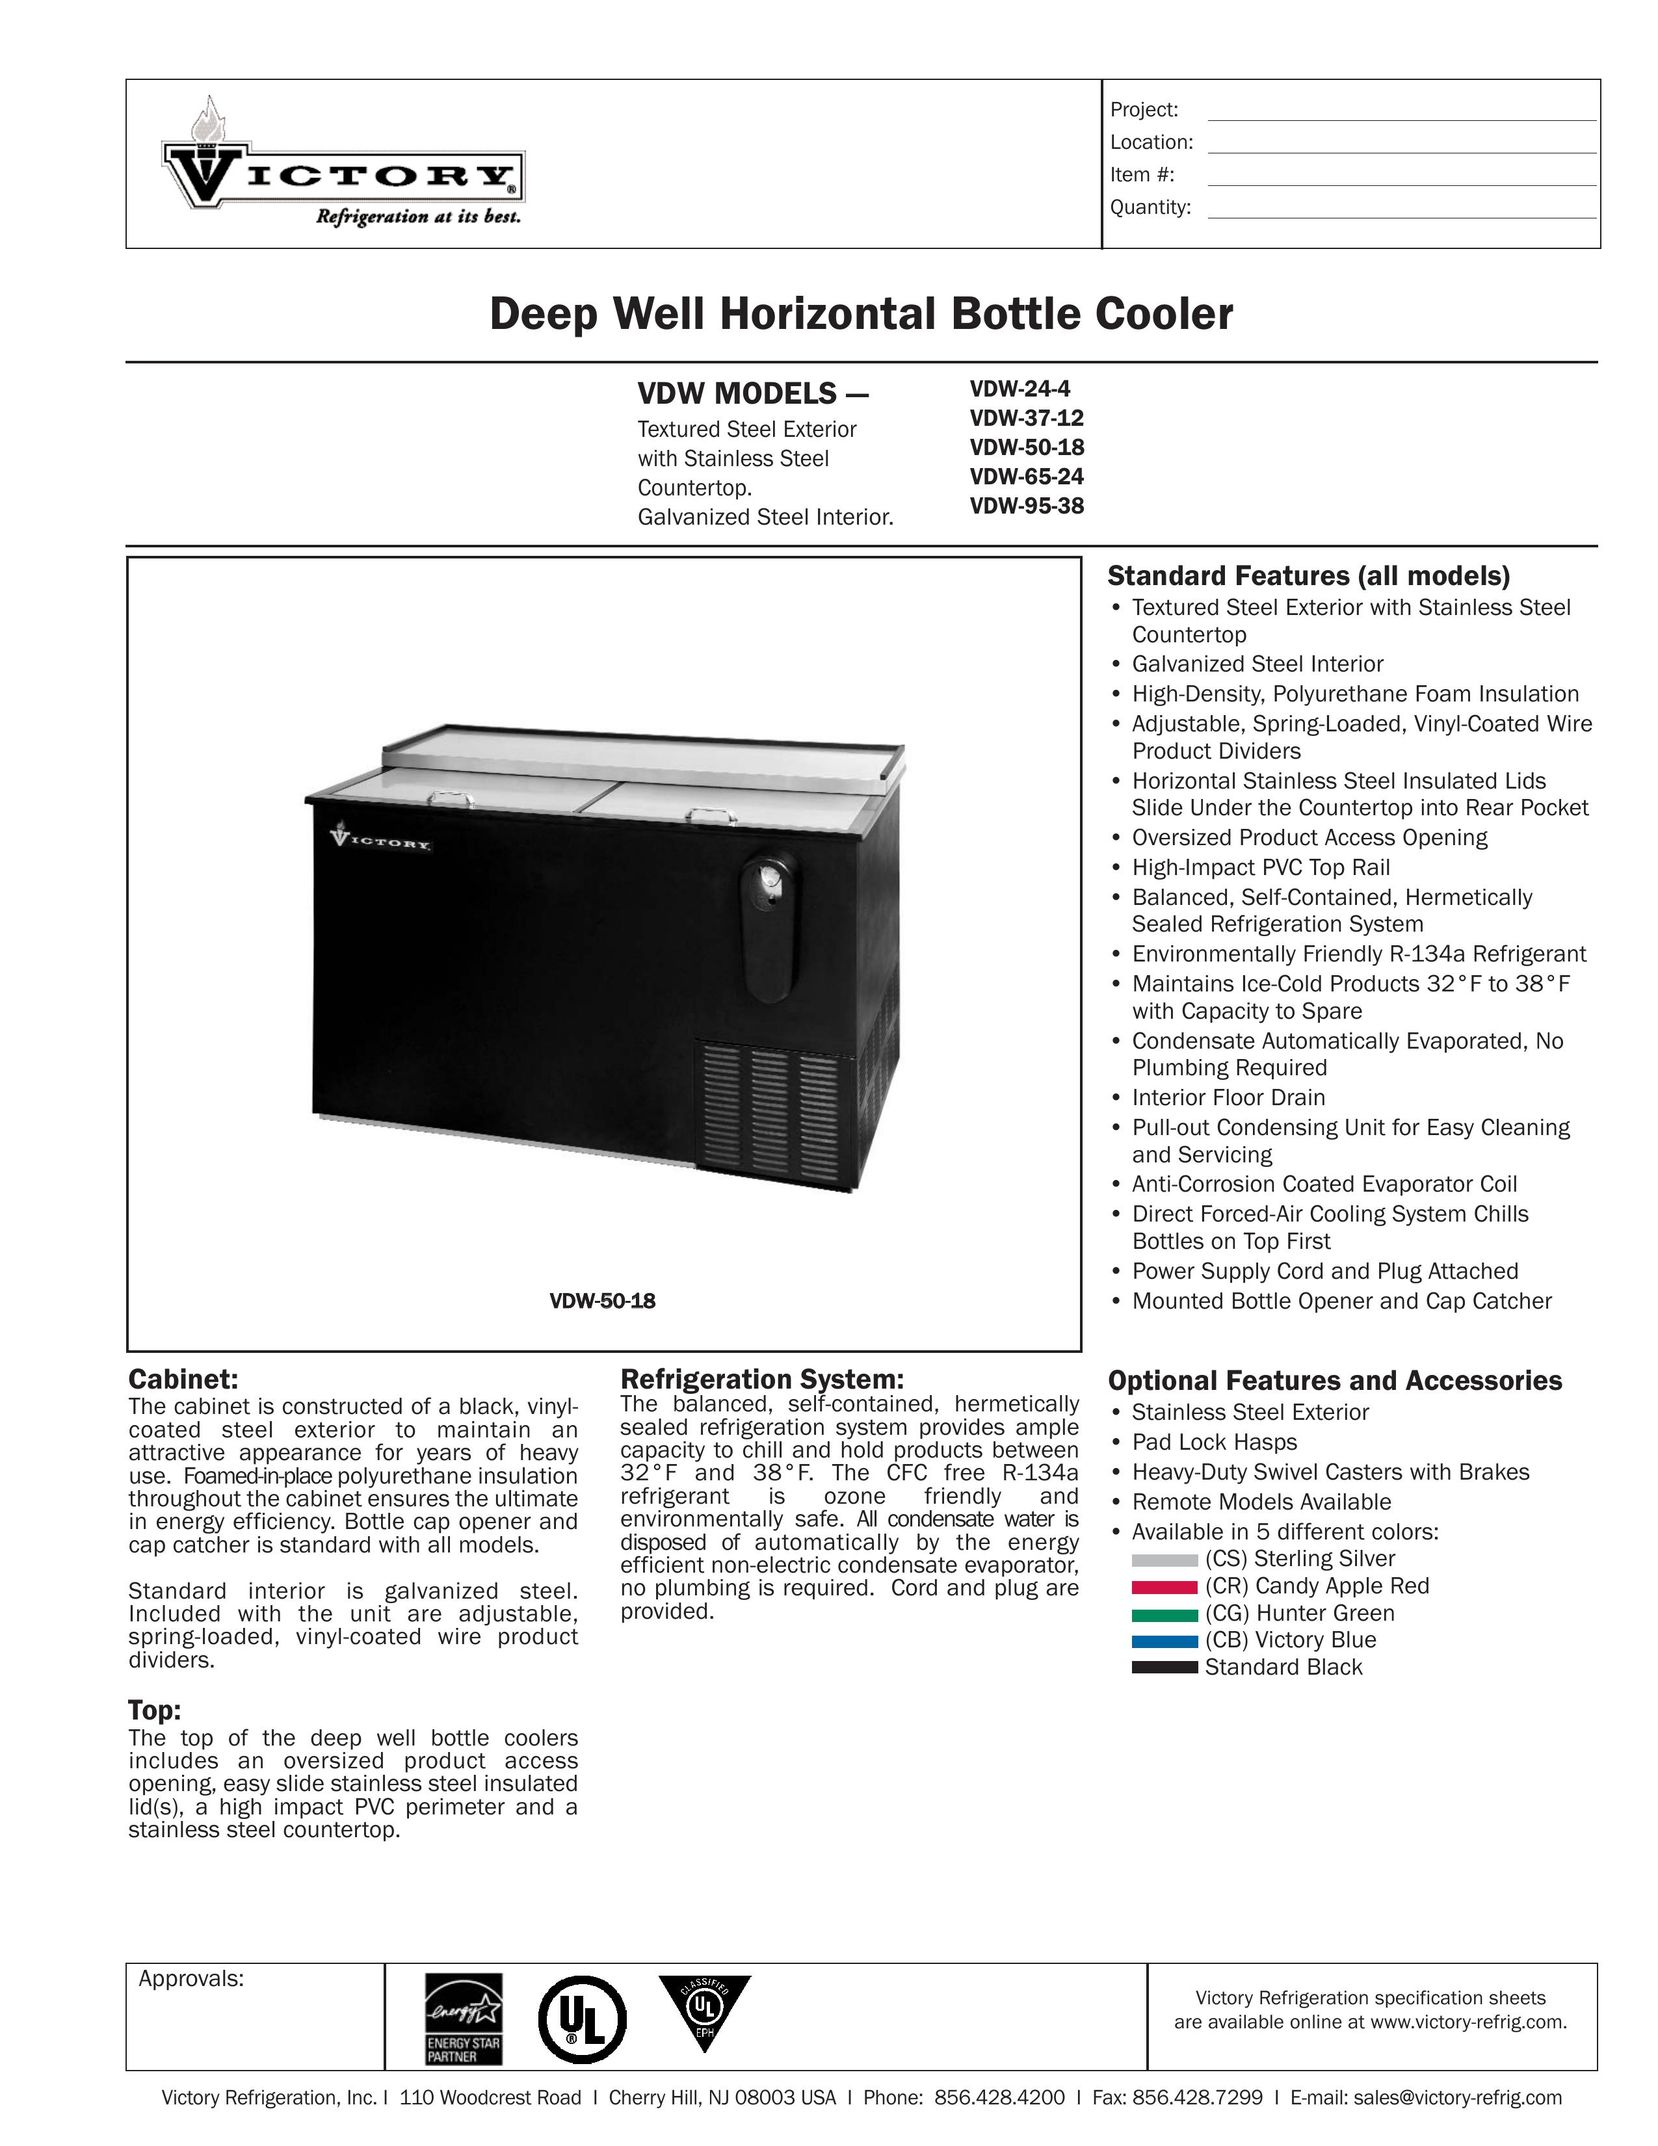 Victory Refrigeration VDW-95-38 Beverage Dispenser User Manual